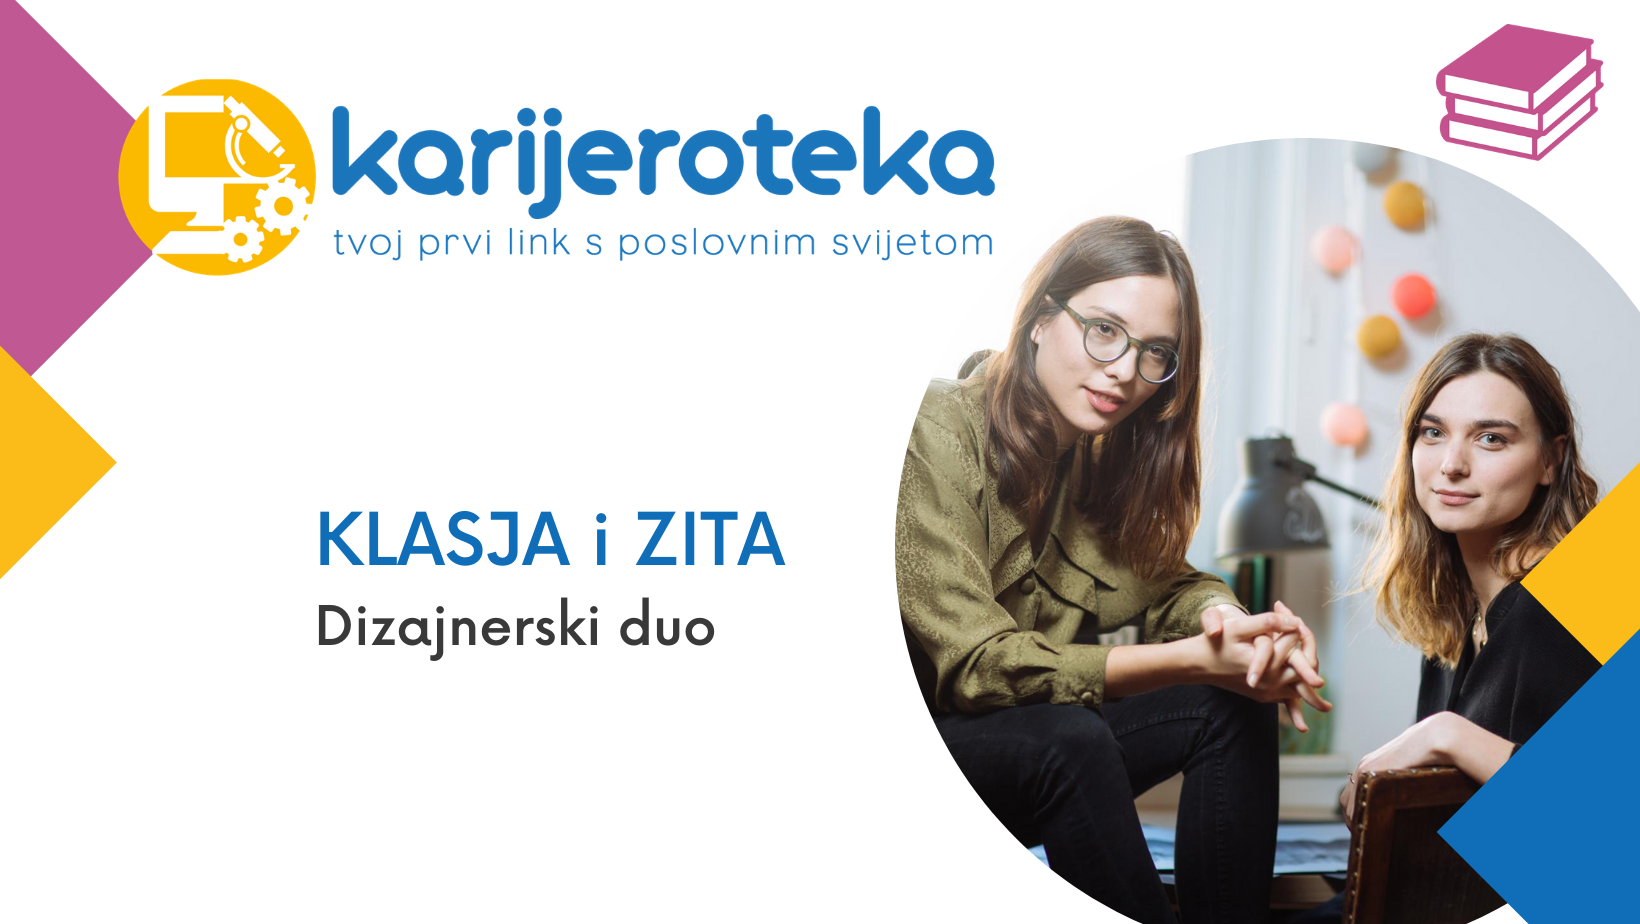 Klasja Habjan and Zita Nakić Vojnović, design